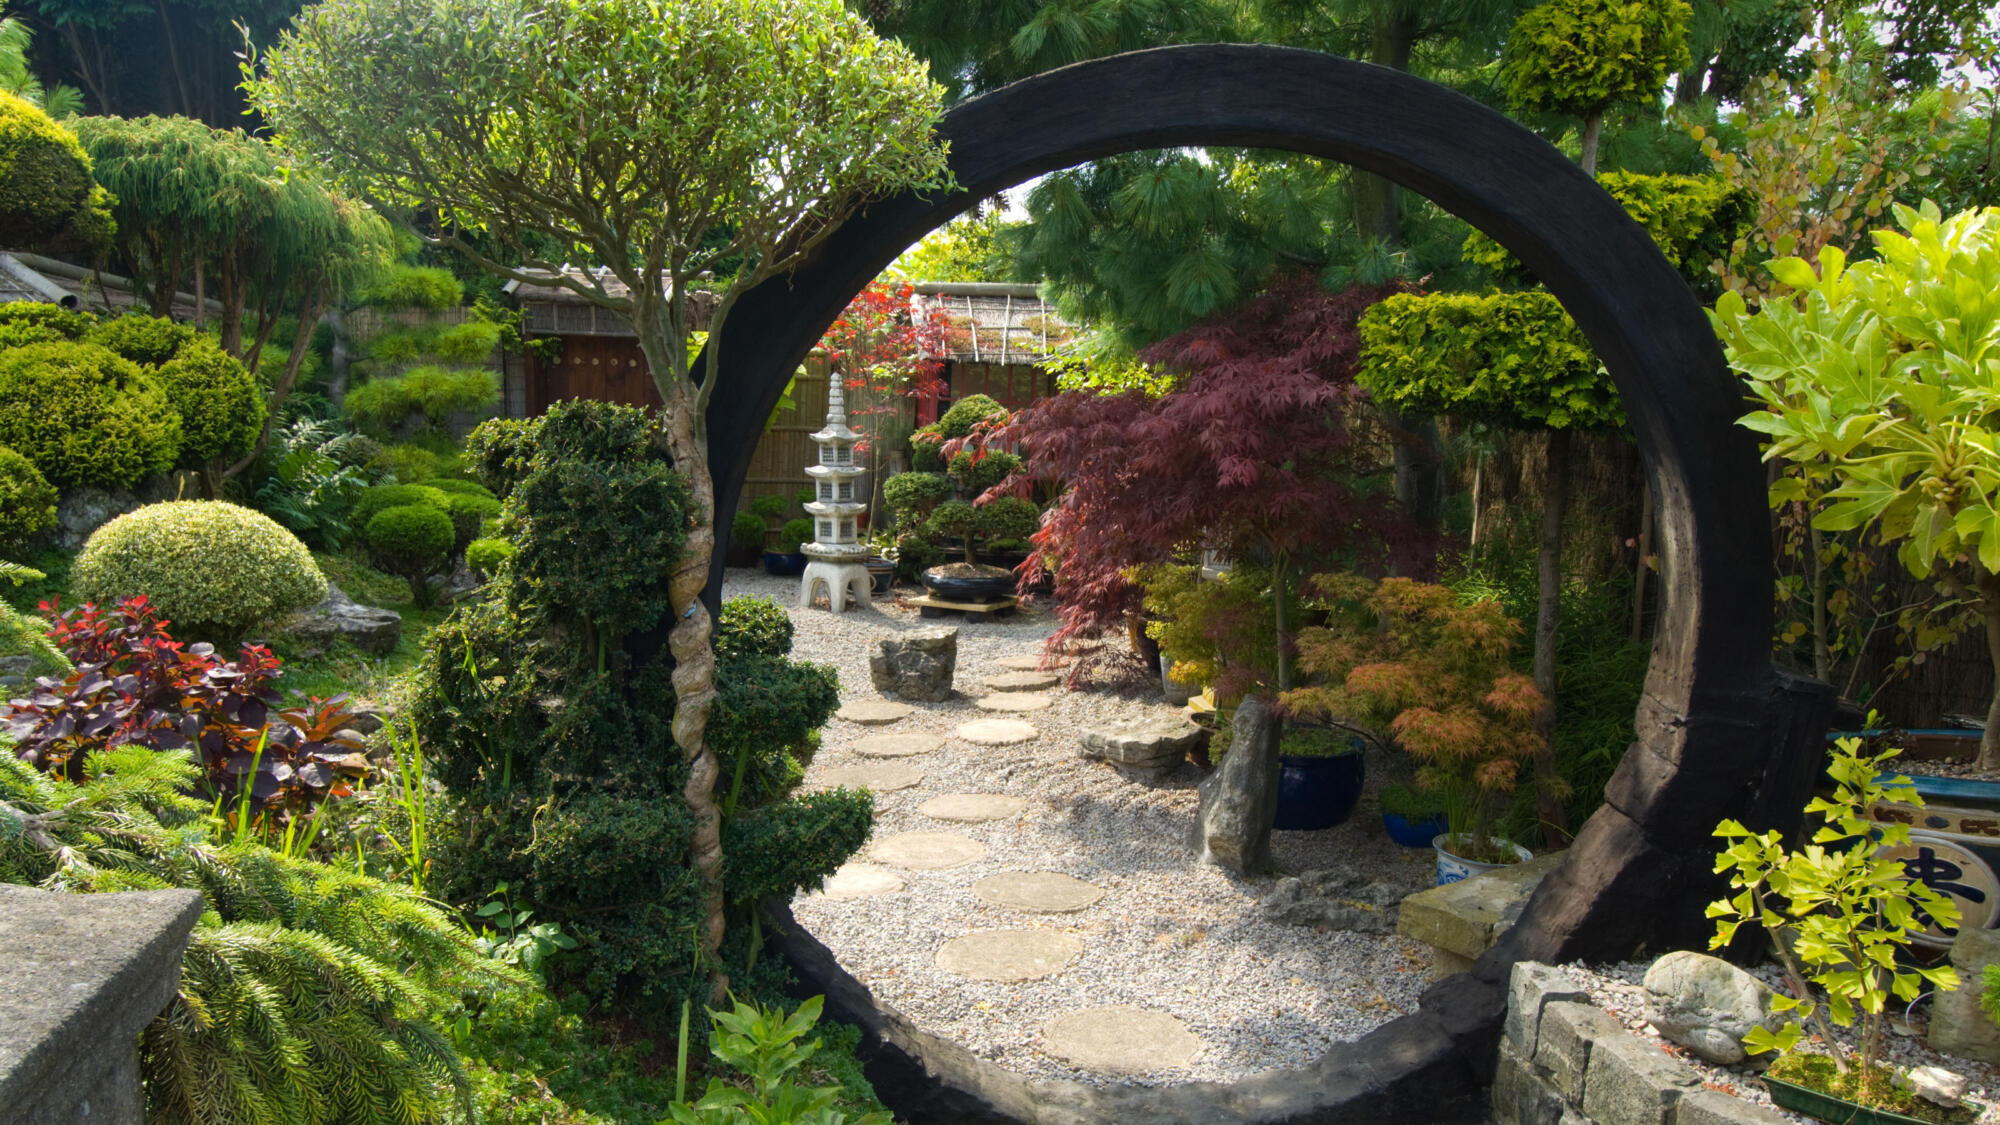 Japanese Zen garden with a circular path.